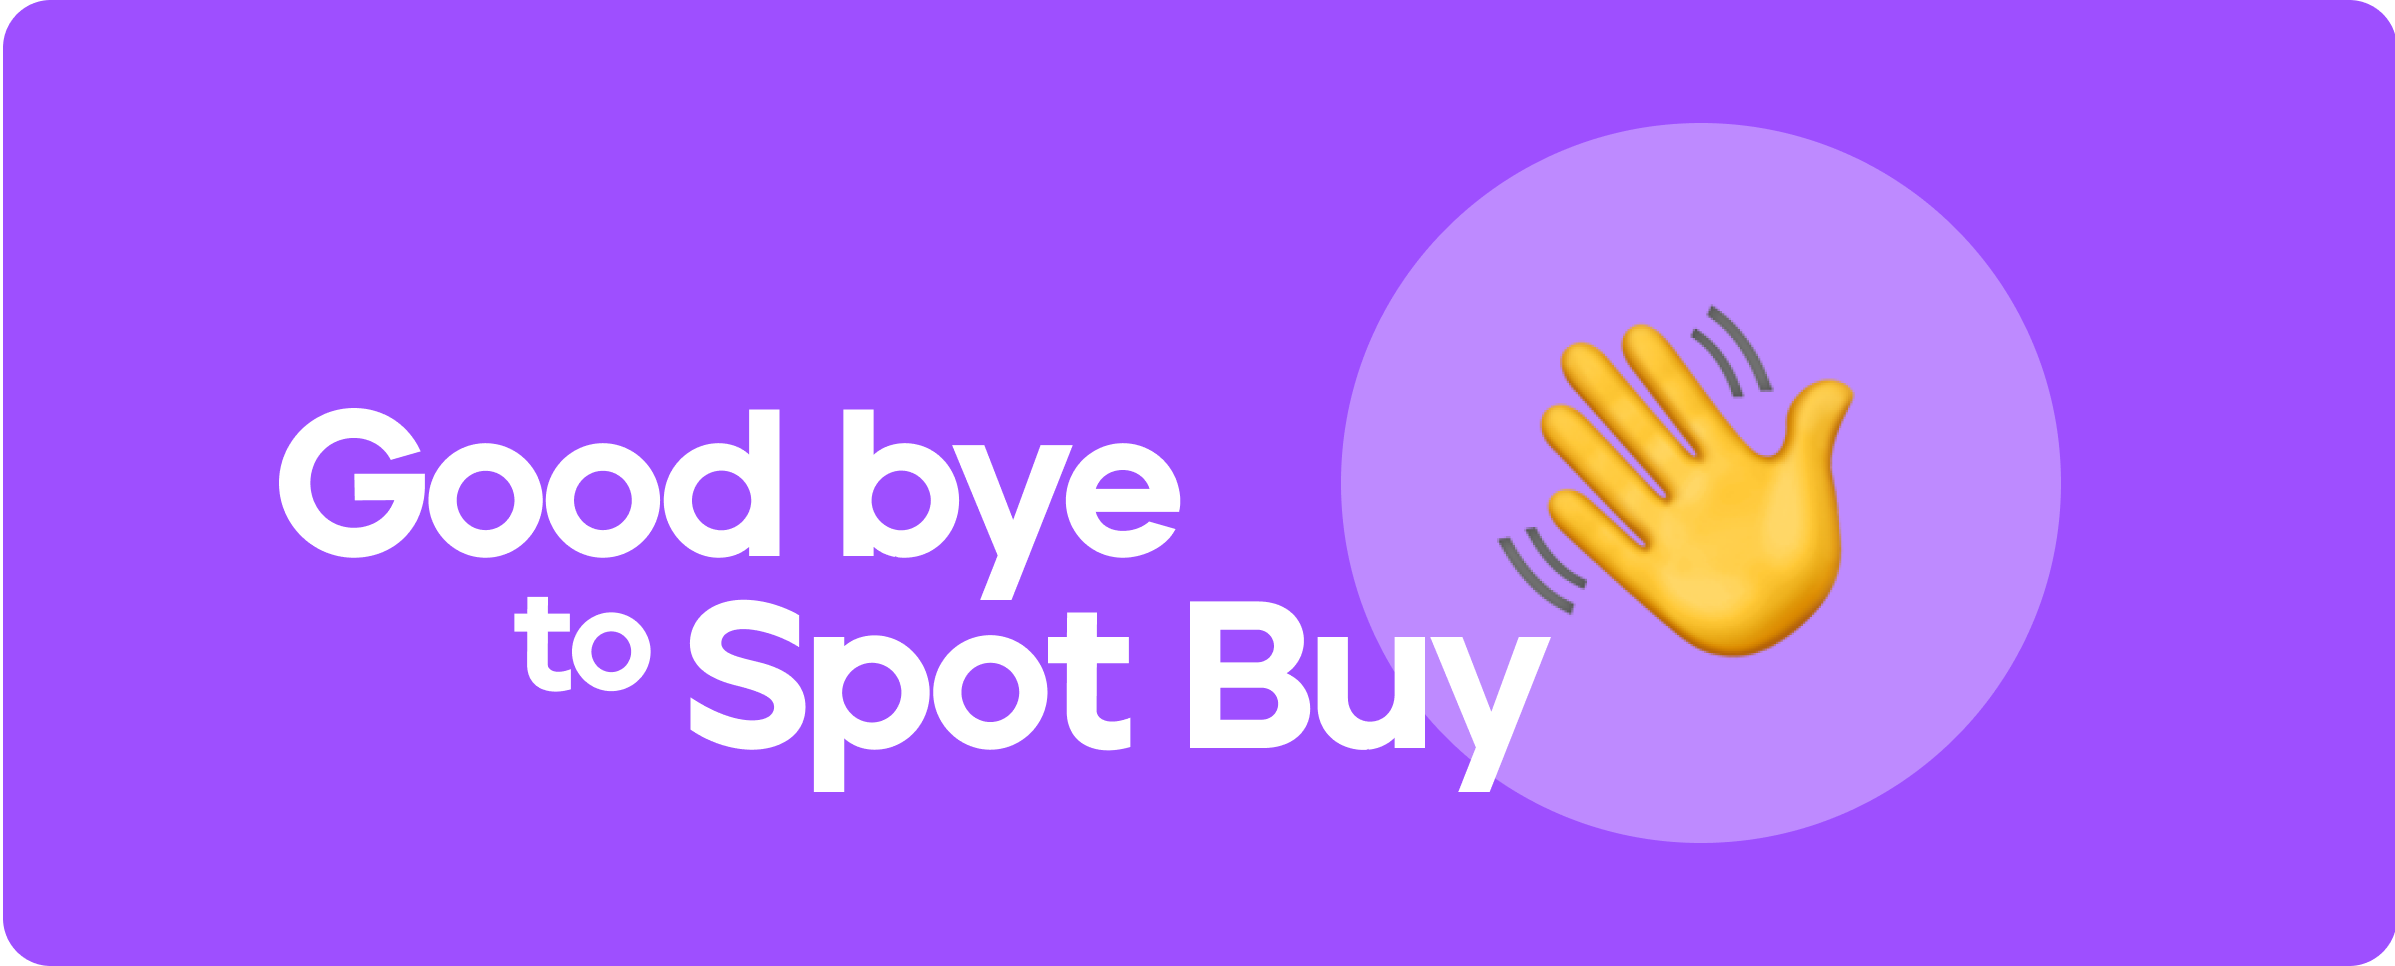 وداعًا لـ Spot Buy